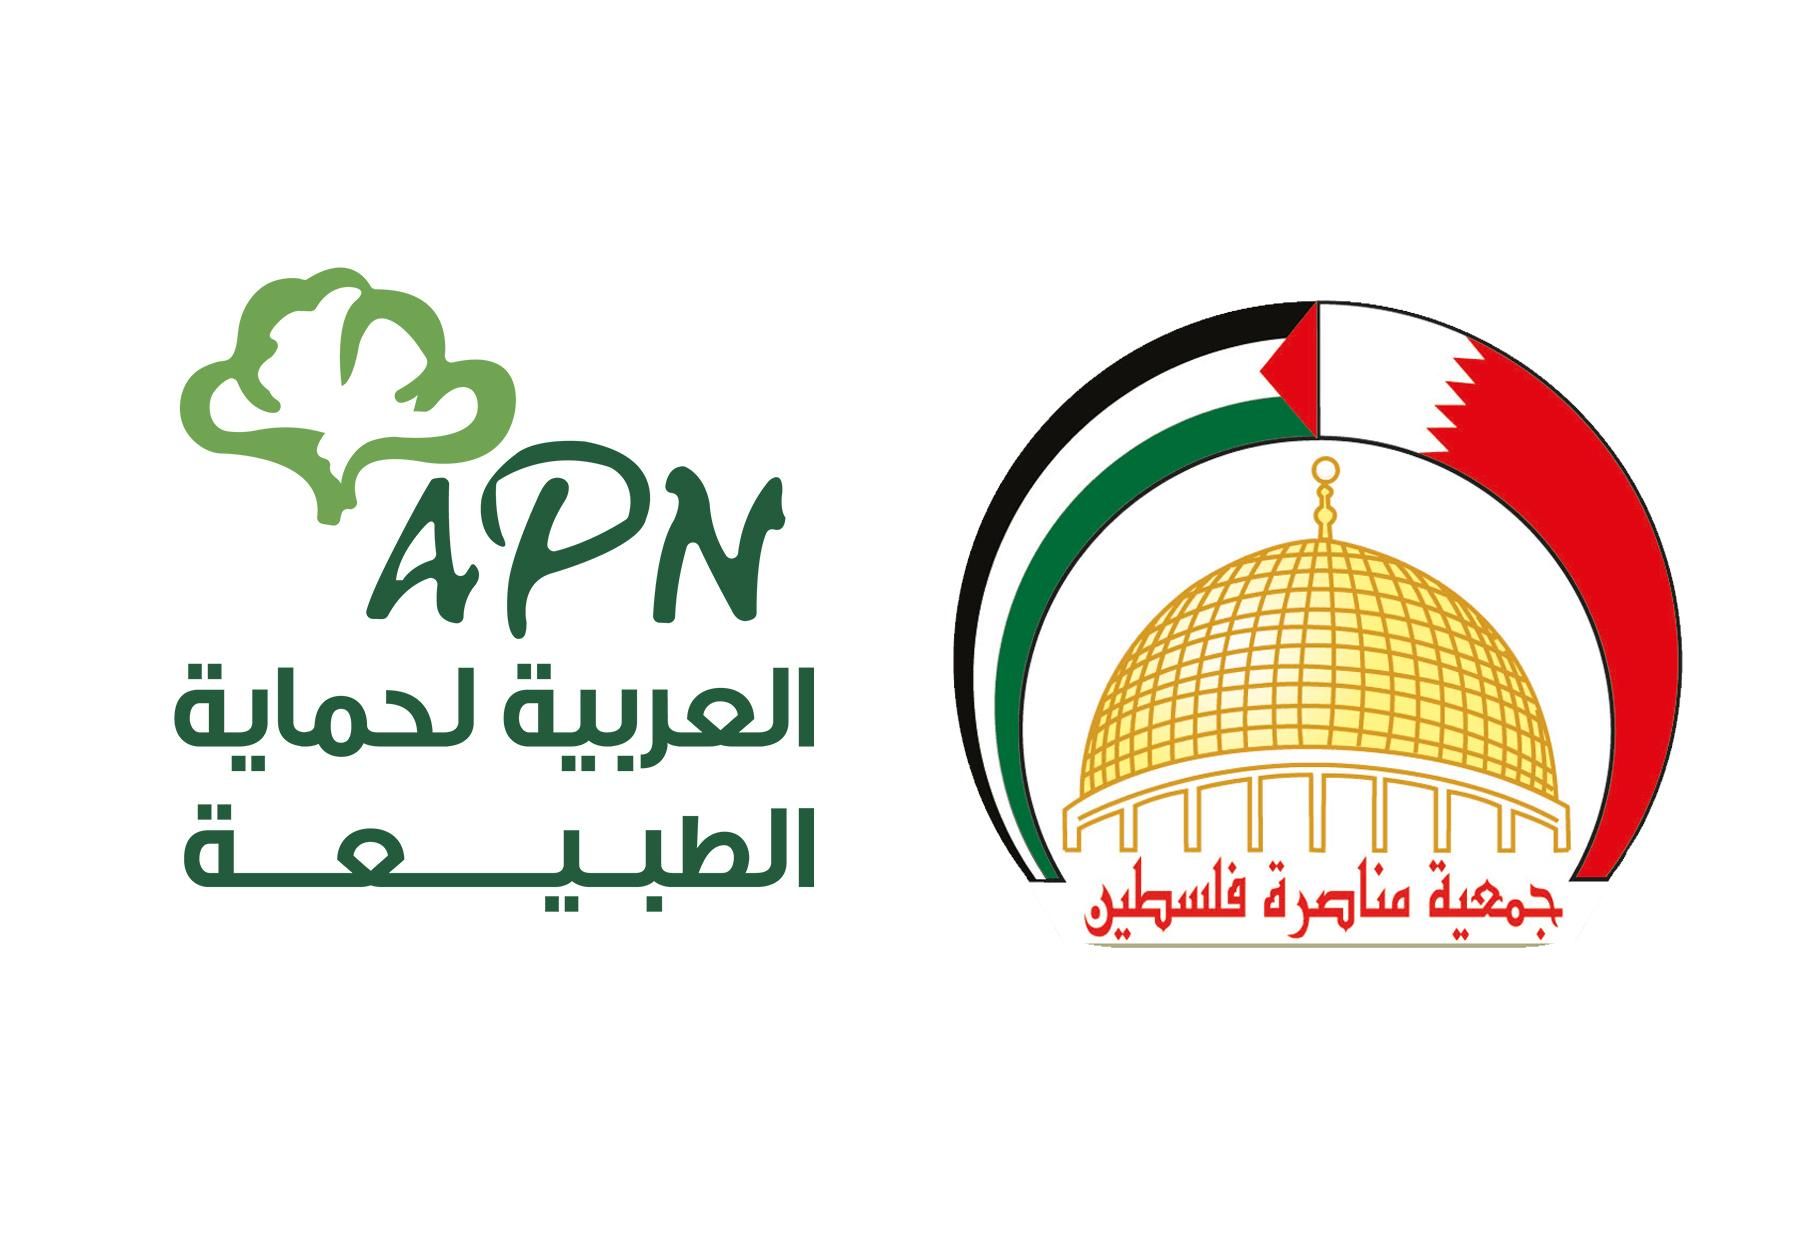 العربية لحماية الطبيعة جمعية مناصرة فلسطين البحرين